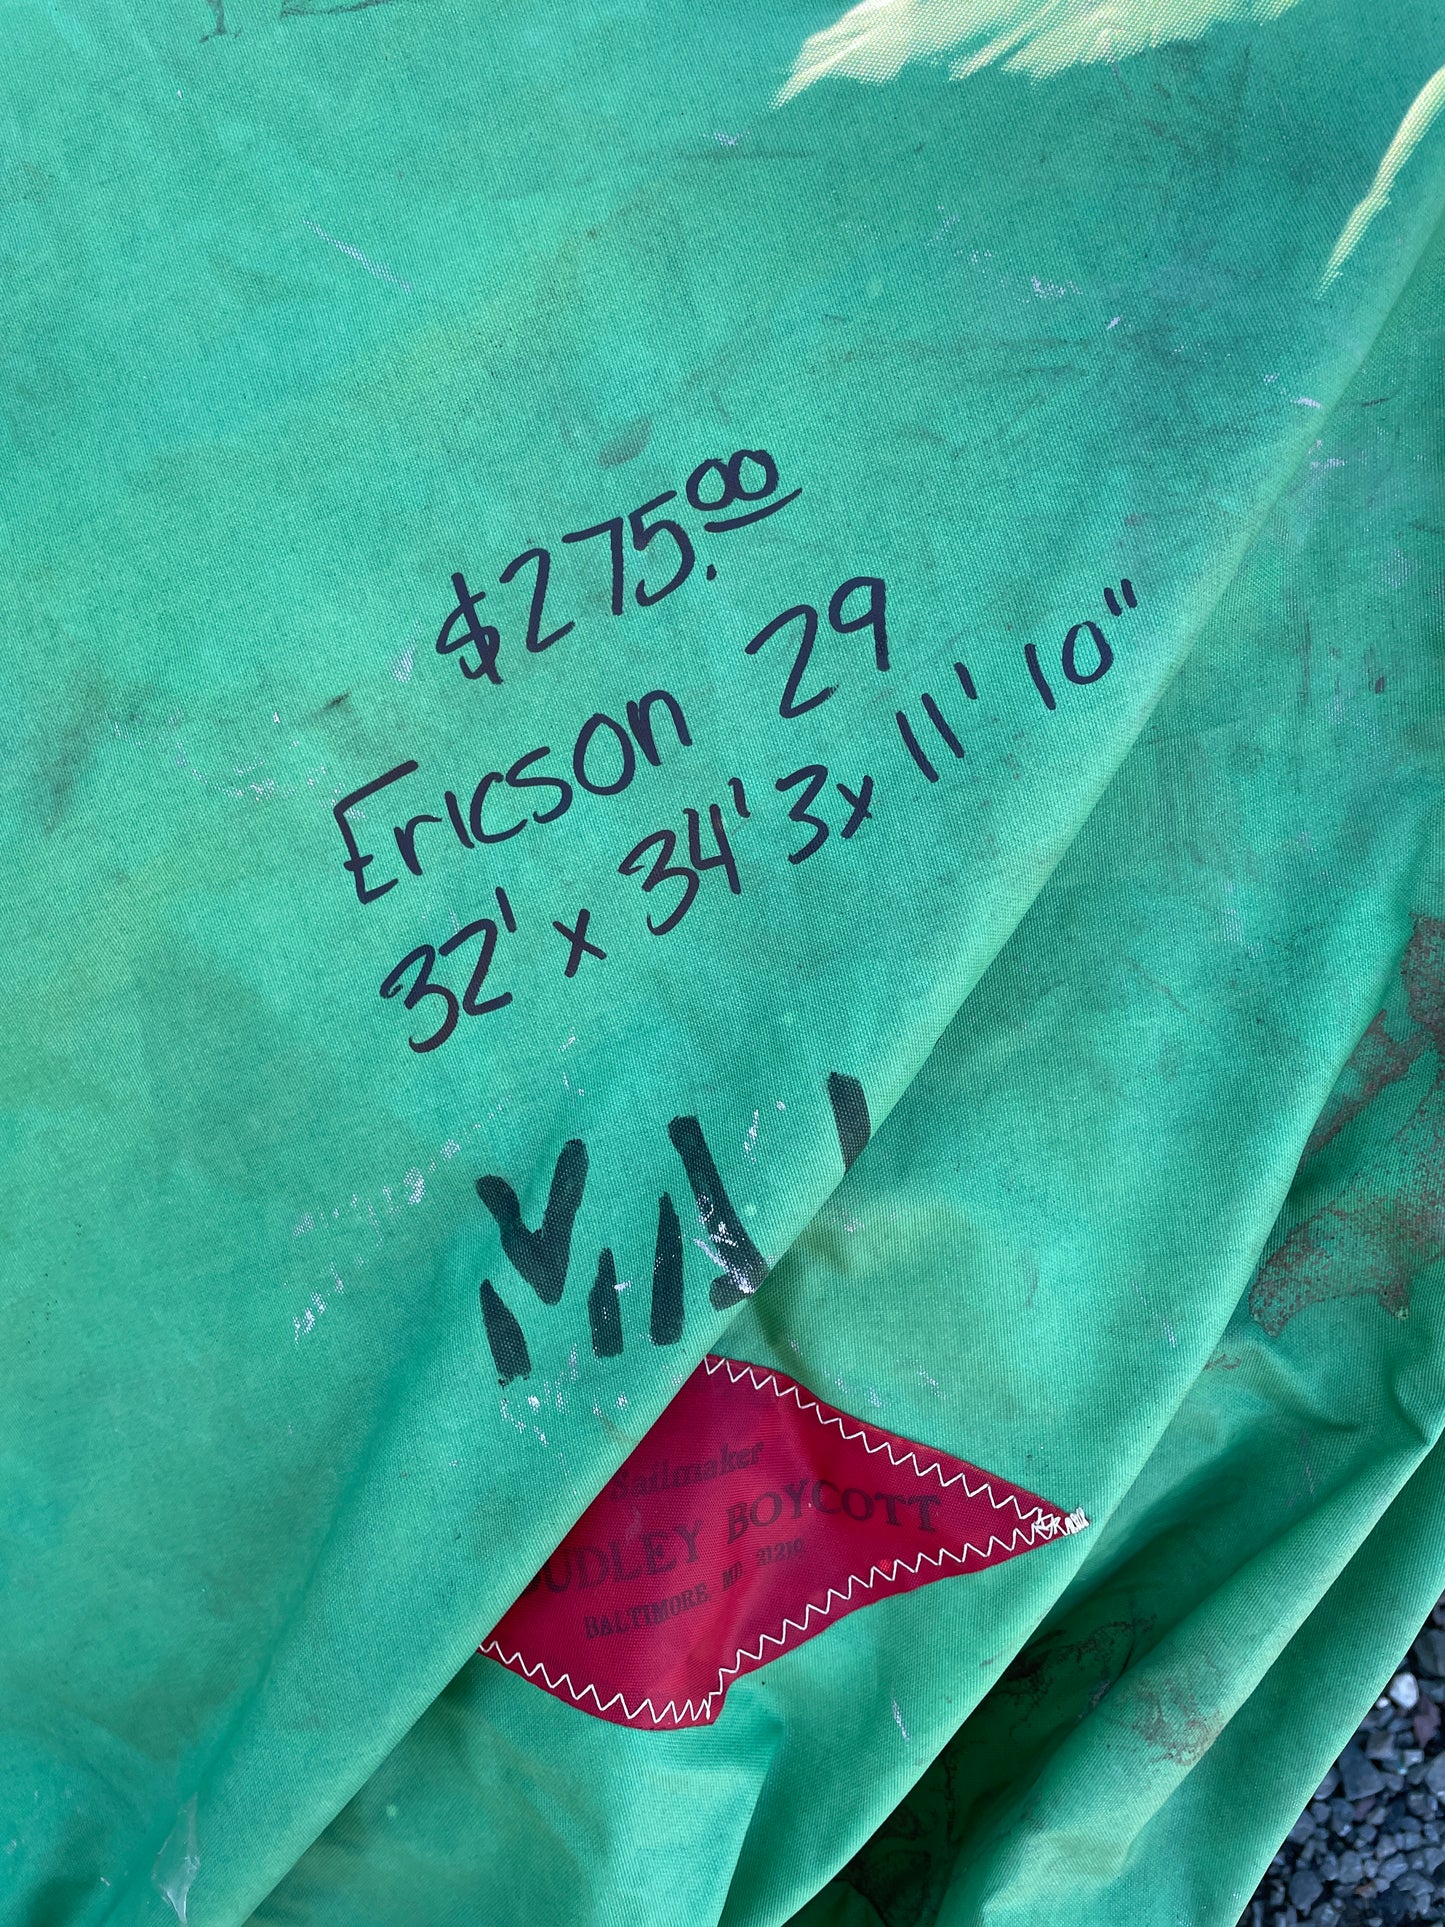 Ericson 29 Mainsail- 34’3” x 32’ x 11’10”